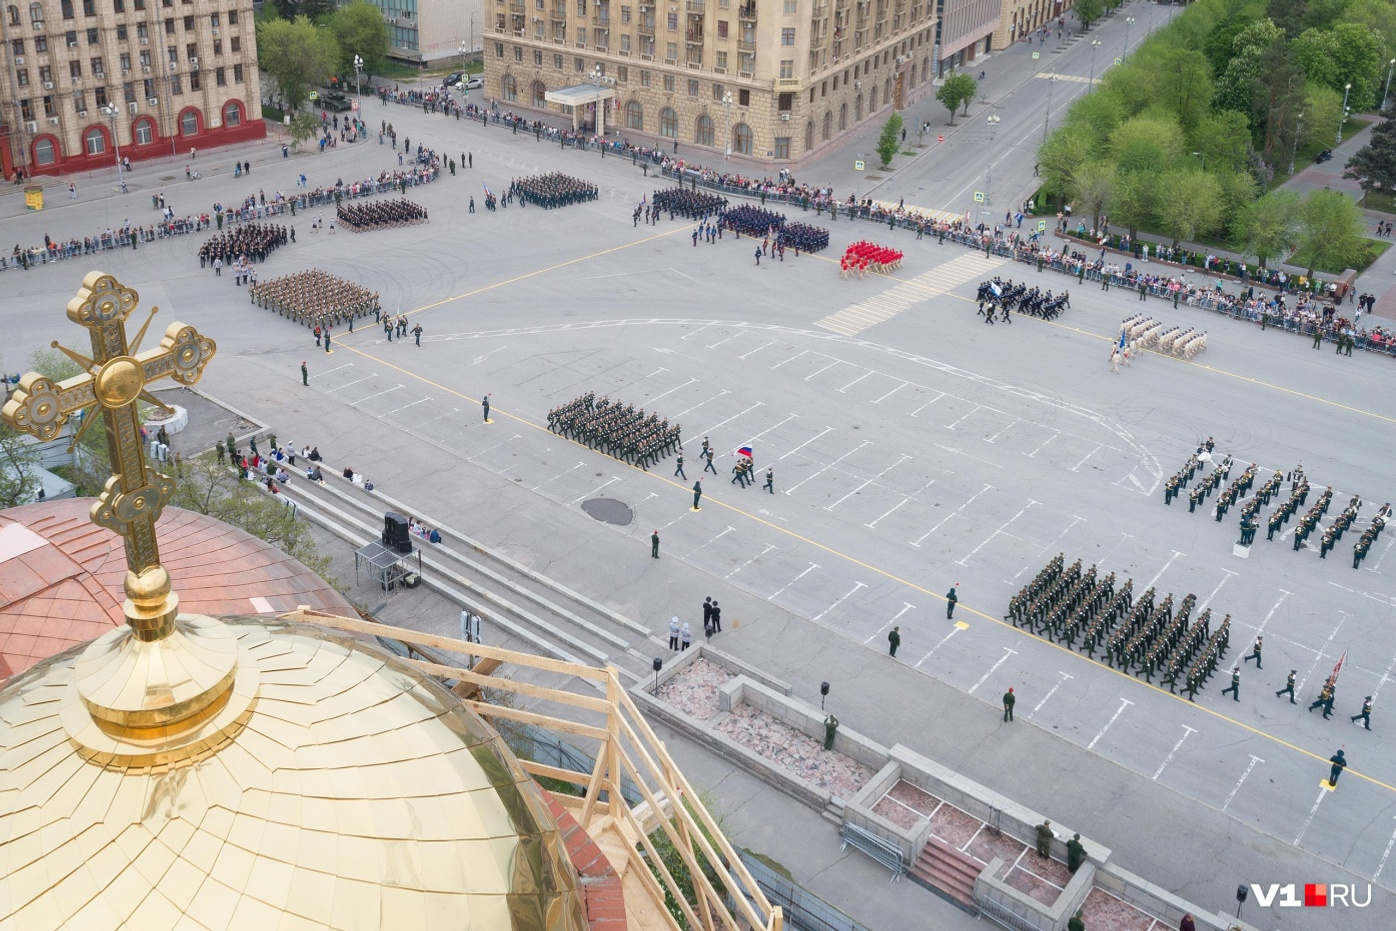 площадь павших борцов сталинград